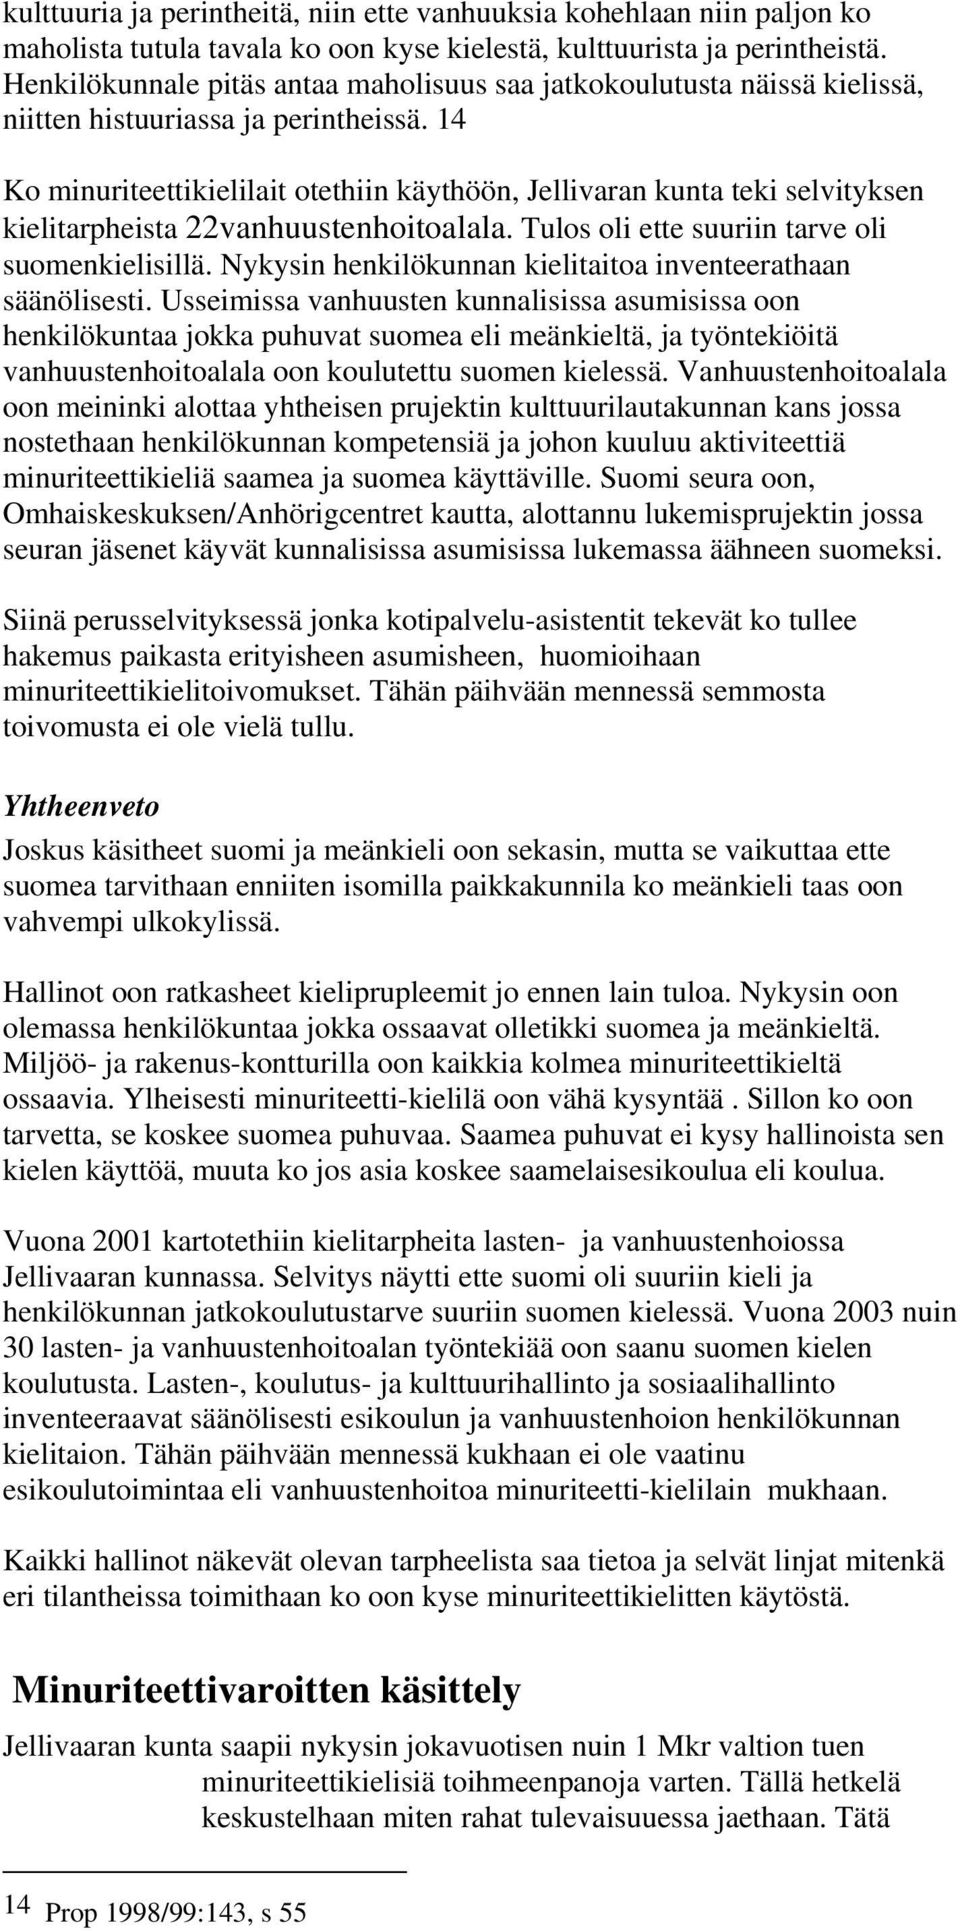 14 Ko minuriteettikielilait otethiin käythöön, Jellivaran kunta teki selvityksen kielitarpheista 22vanhuustenhoitoalala. Tulos oli ette suuriin tarve oli suomenkielisillä.